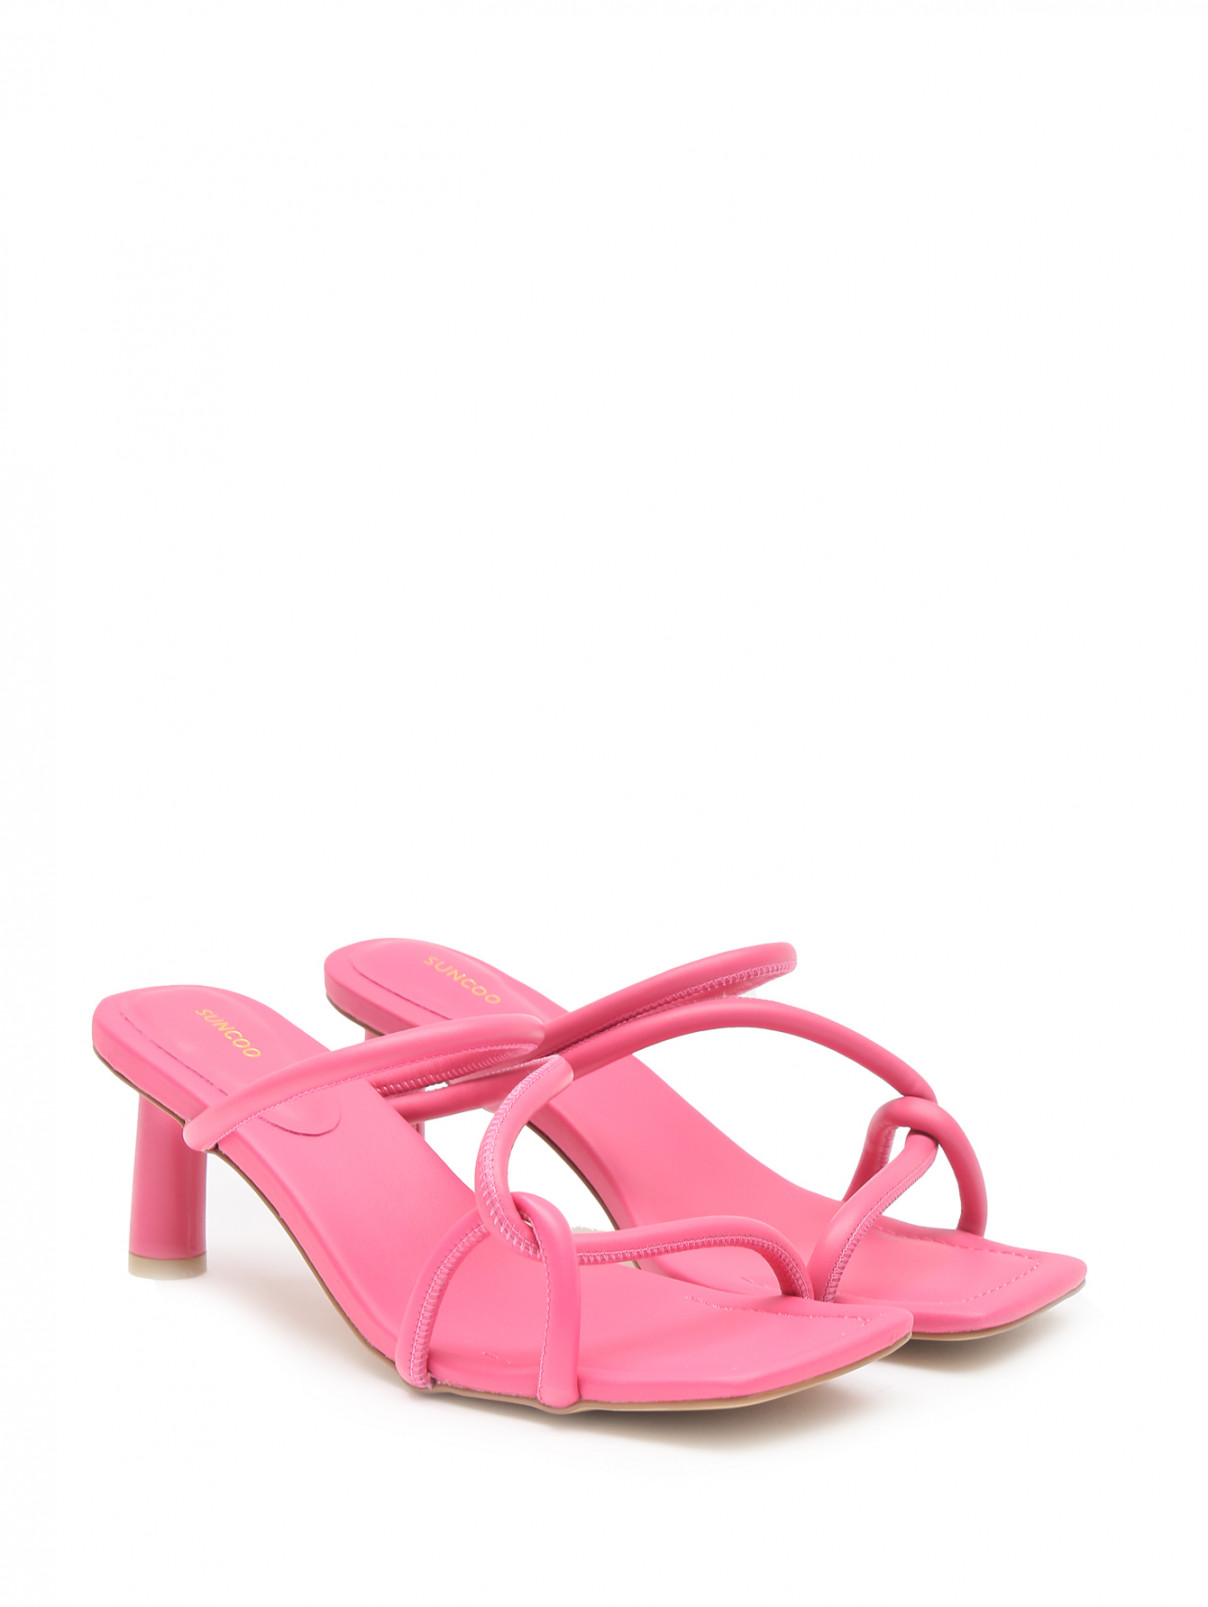 Босоножки из кожи на среднем каблуке Suncoo  –  Общий вид  – Цвет:  Розовый